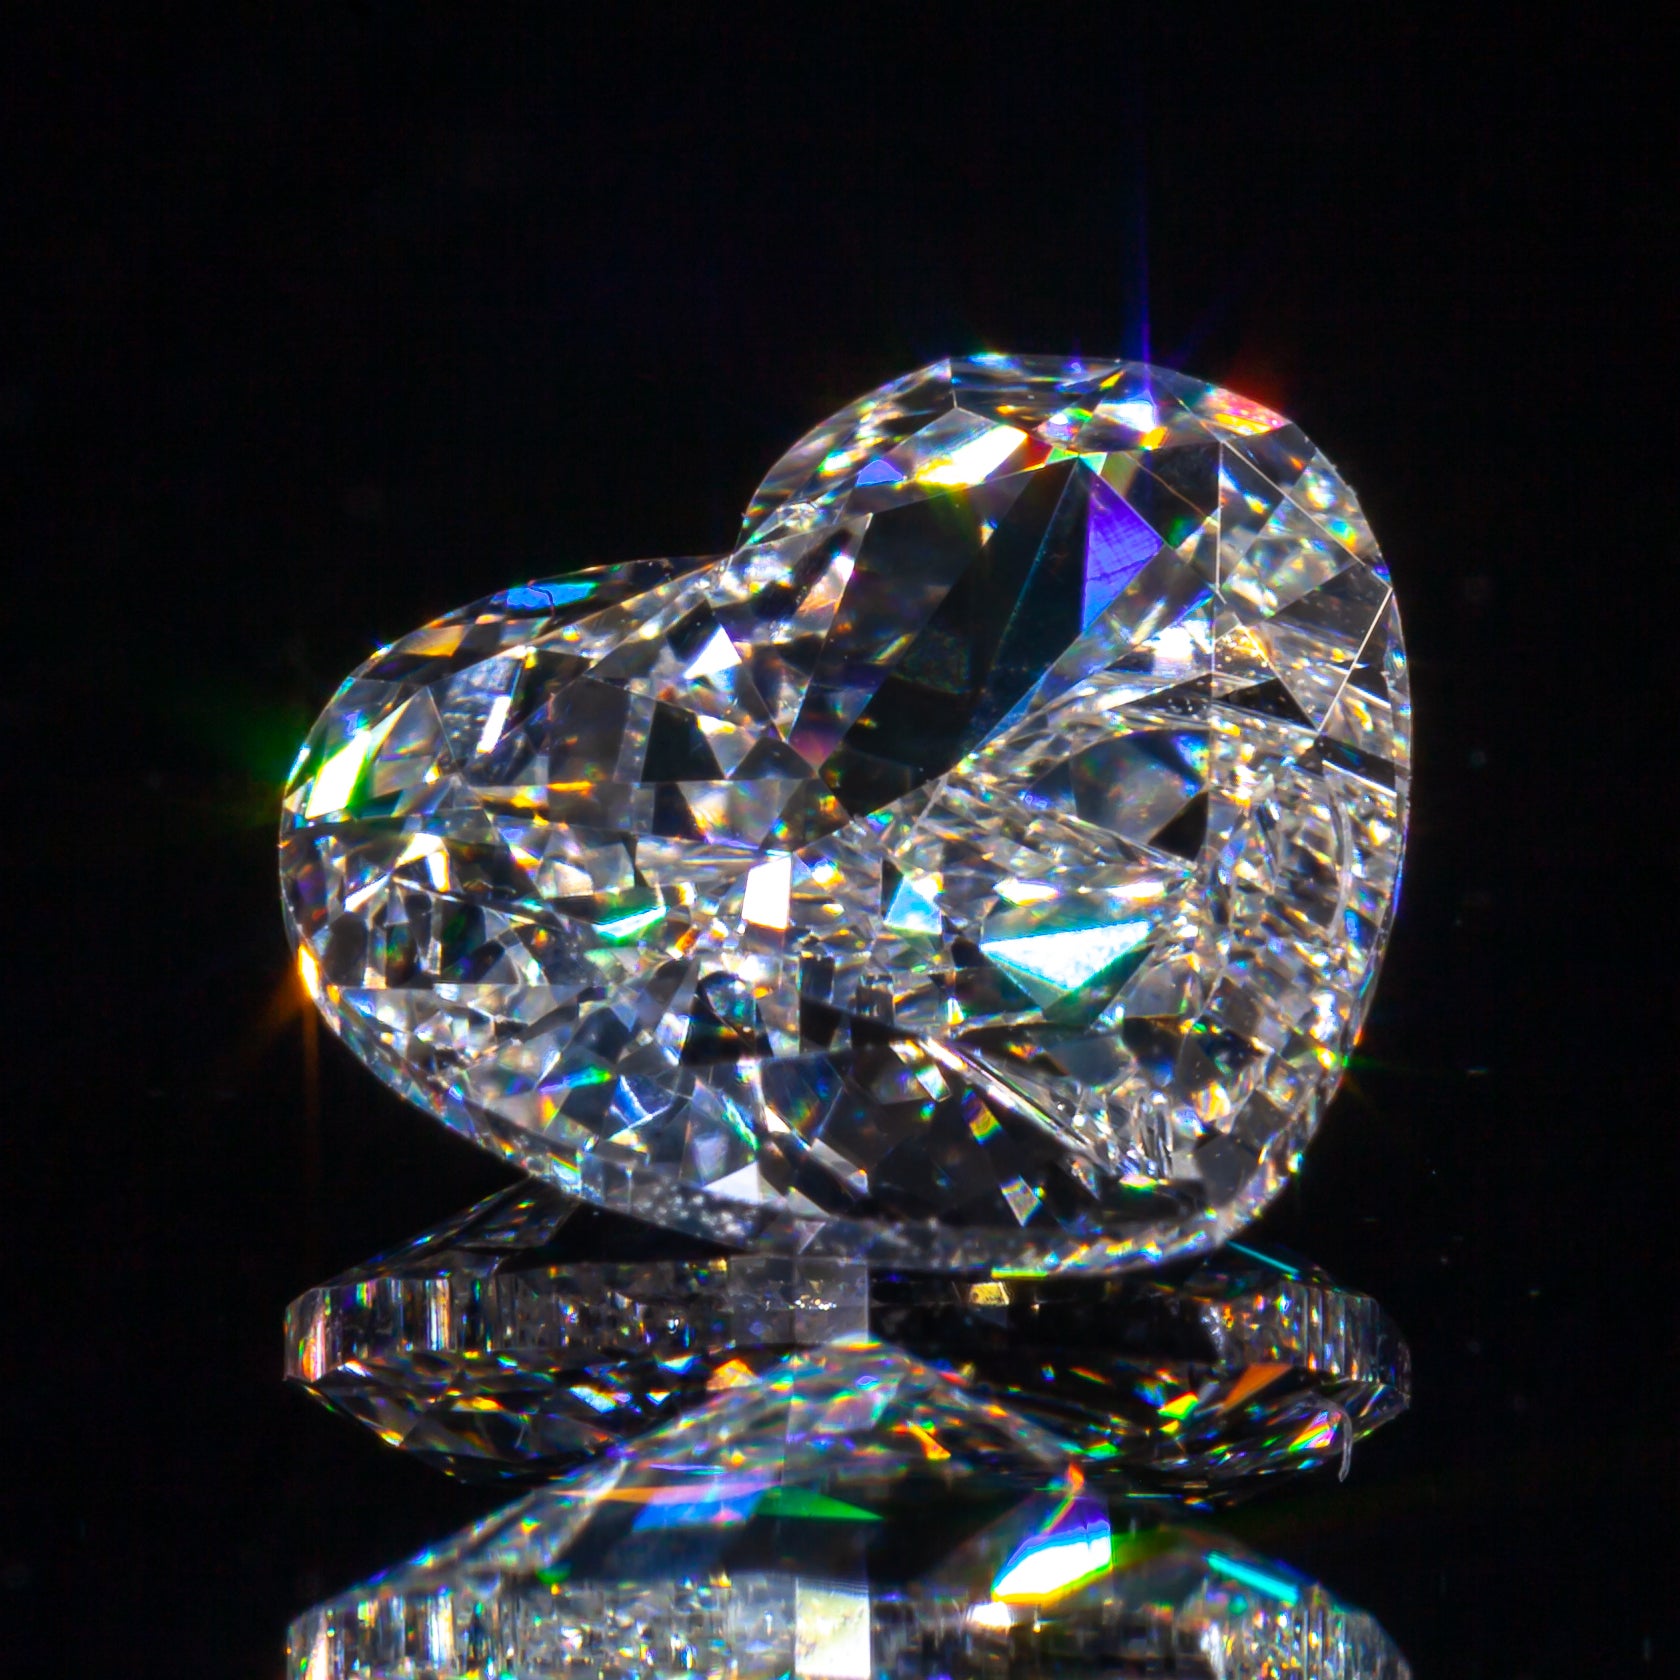 Diamant en forme de cœur de 1,00 carat non serti G / VS2 certifié GIA

Informations générales sur le diamant
Numéro de rapport GIA : 5182448120
Taille du diamant : Brilliante modifiée en forme de cœur
Dimensions : 6,66 x 7,42 x 3,03 mm

Résultats de